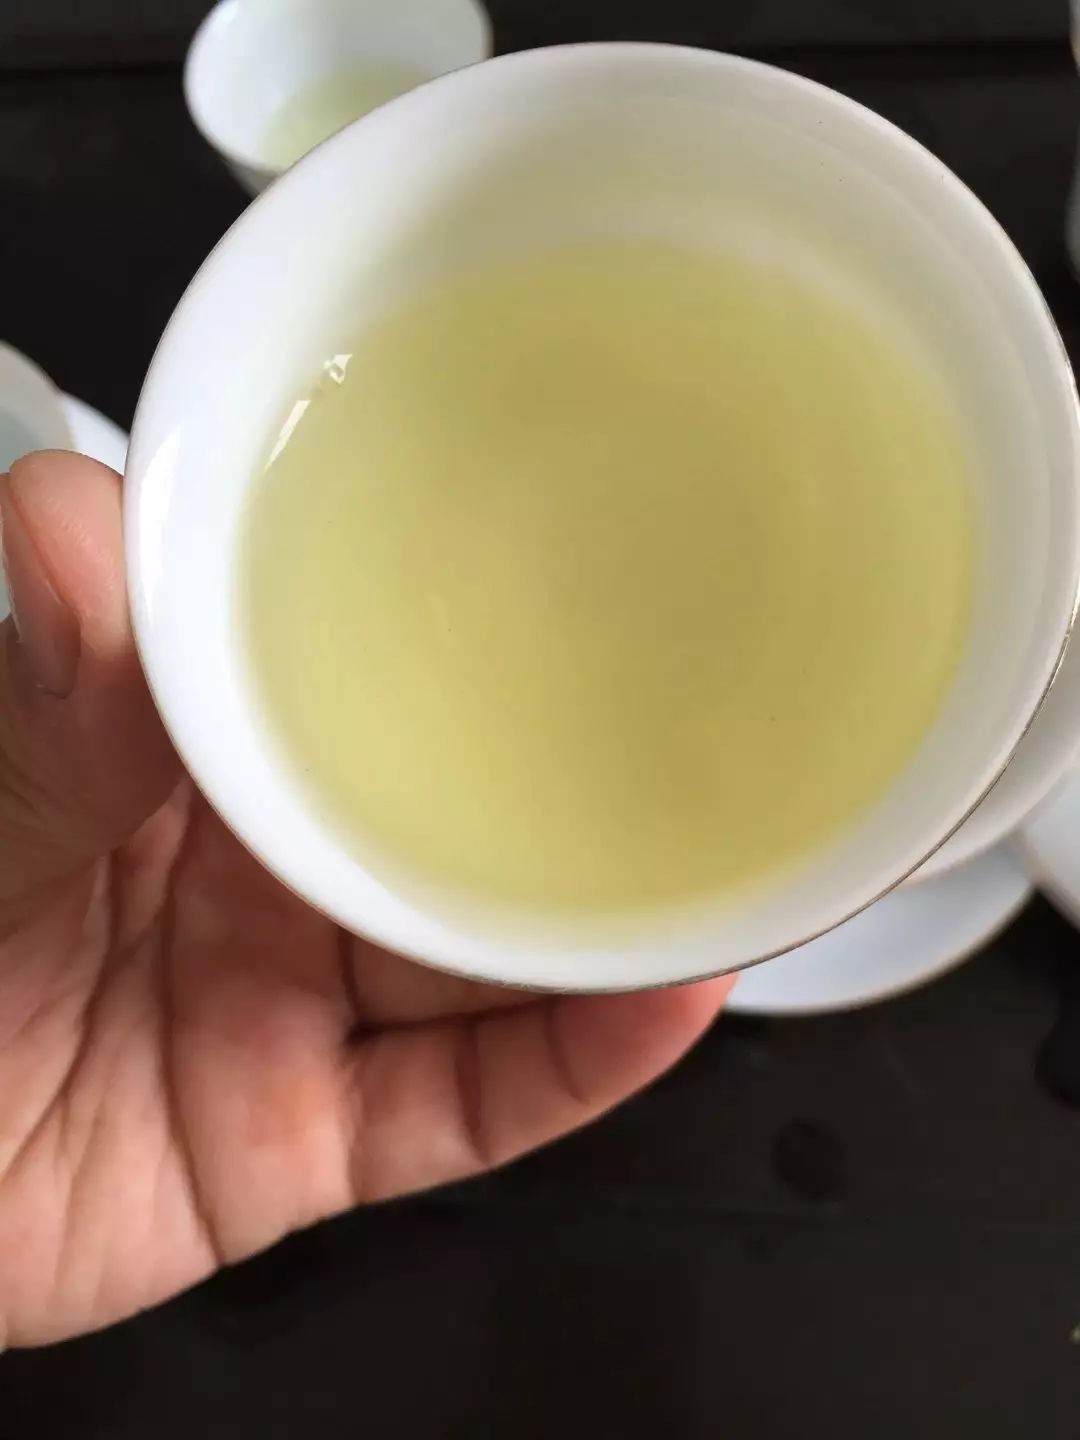 茶汤滑口还是有阻滞感往往可以在吞咽时感受,高档安溪铁观音茶汤要求